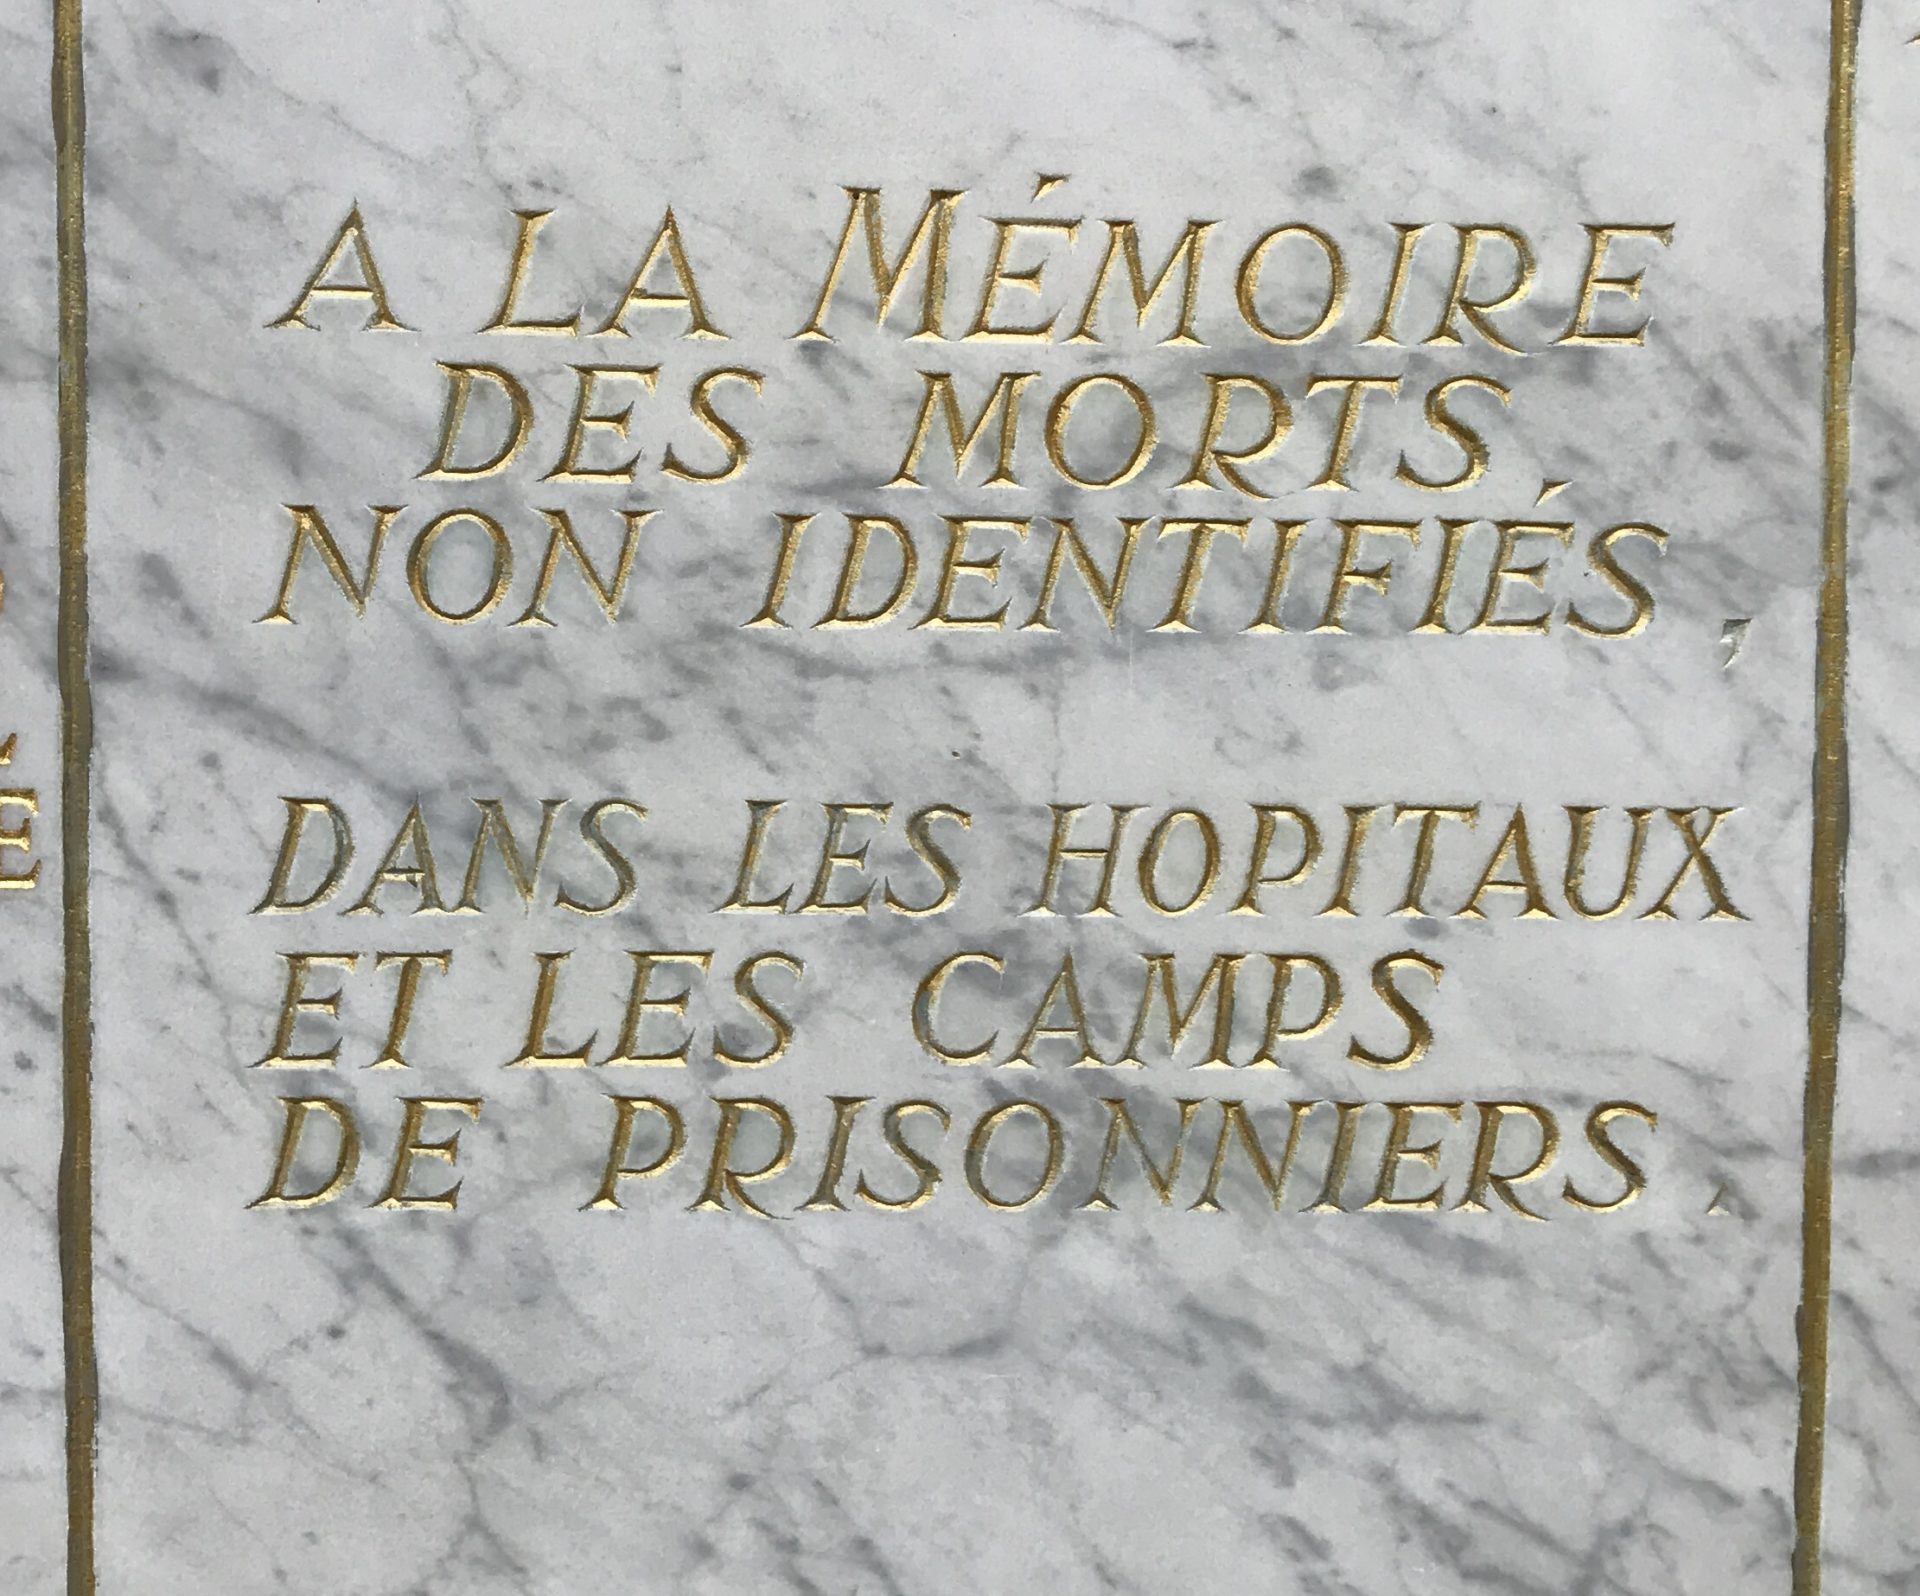 Korean War Memorials - Saint-Germain-en-Laye - France